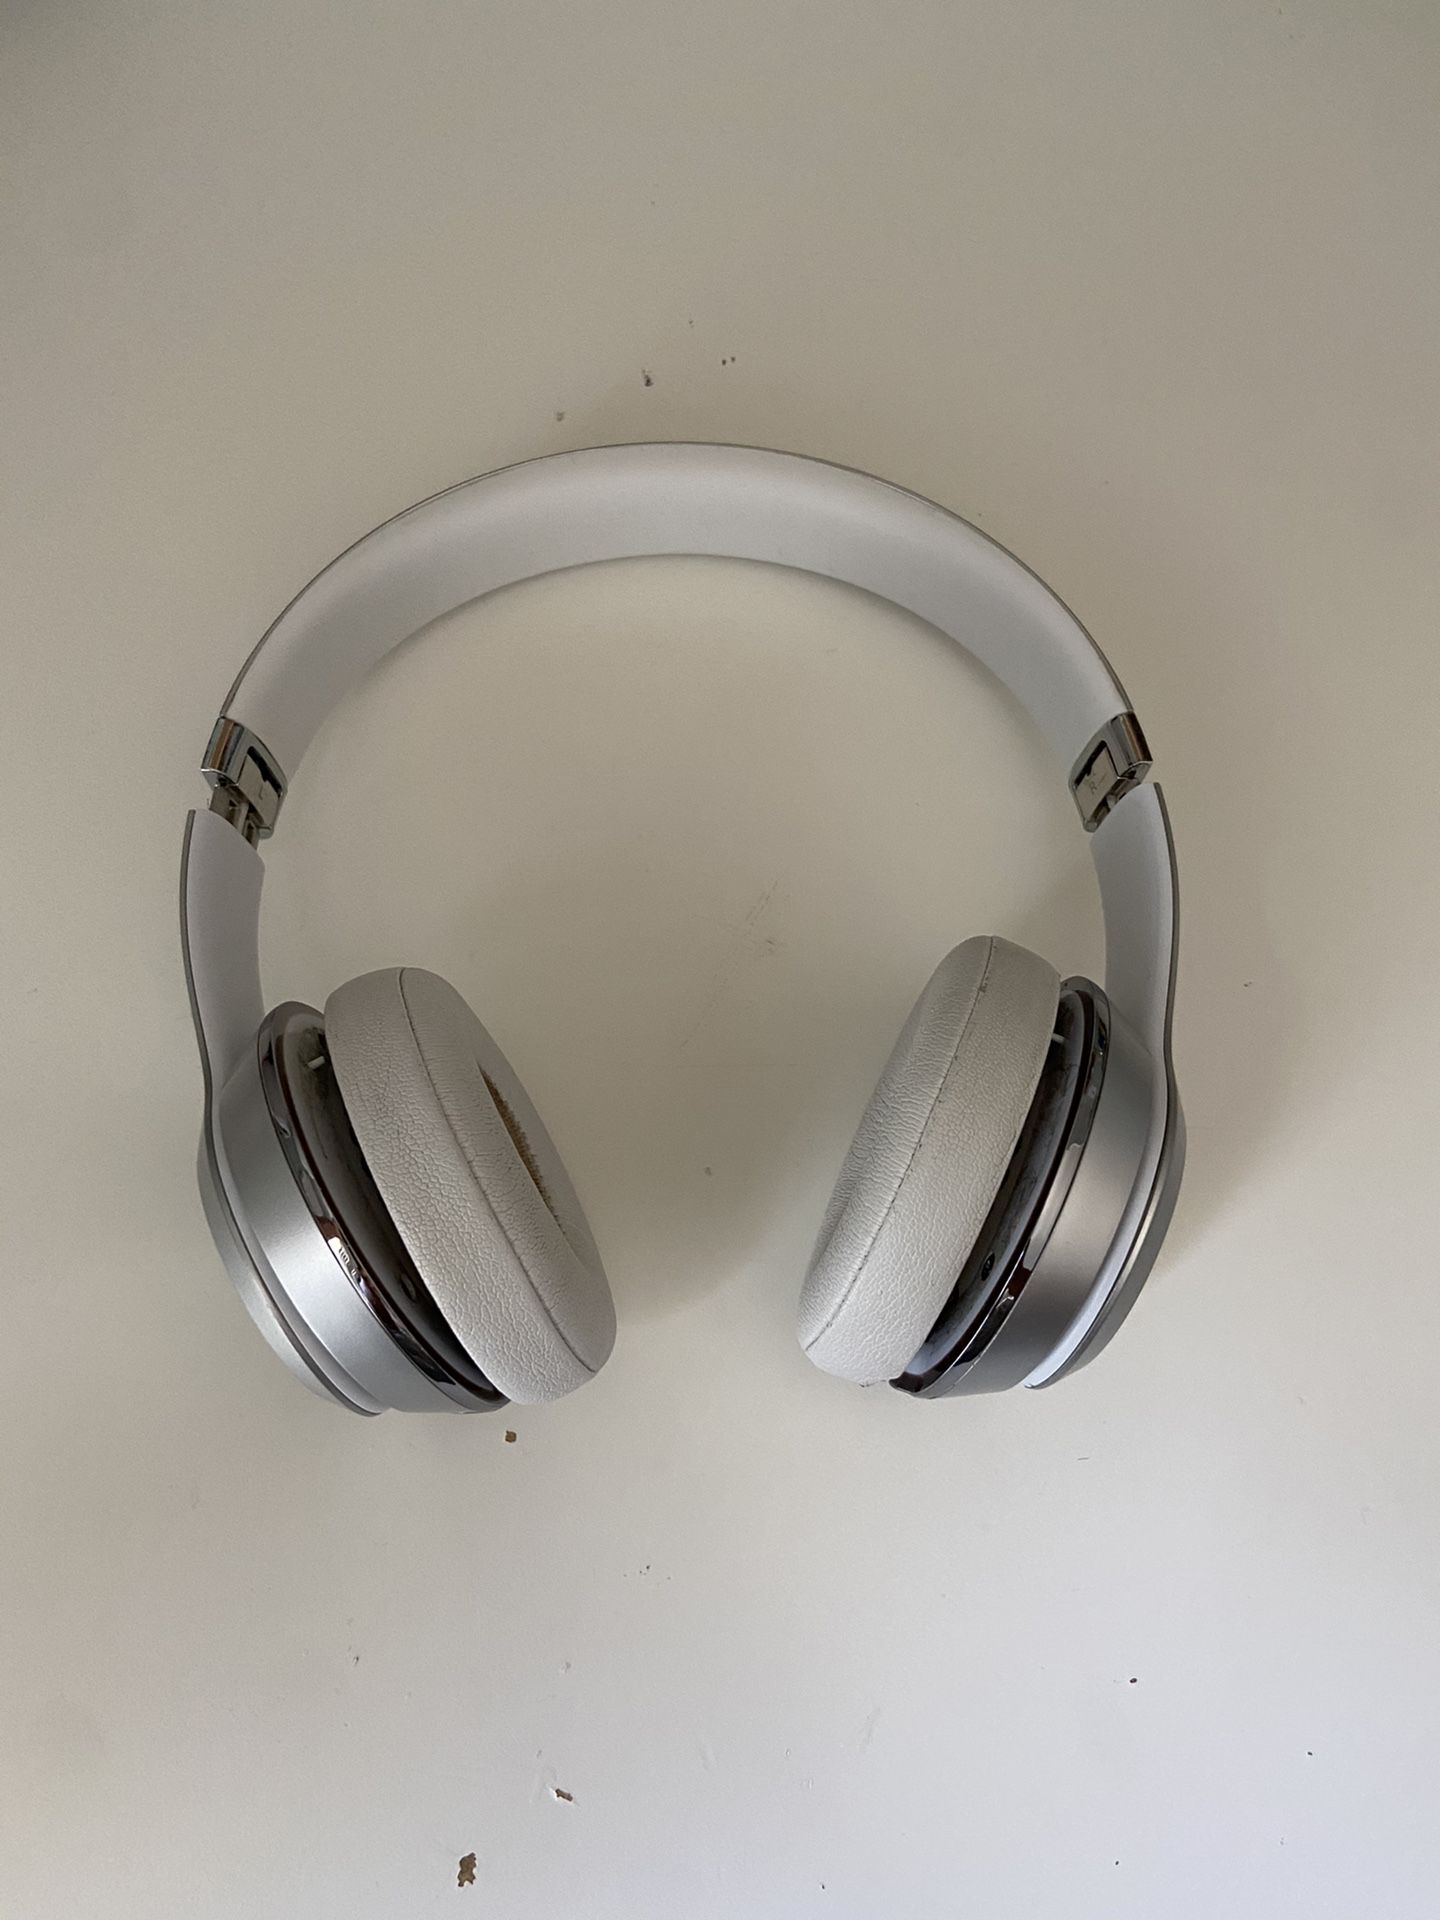 Broken beats solo 3 wireless headphones